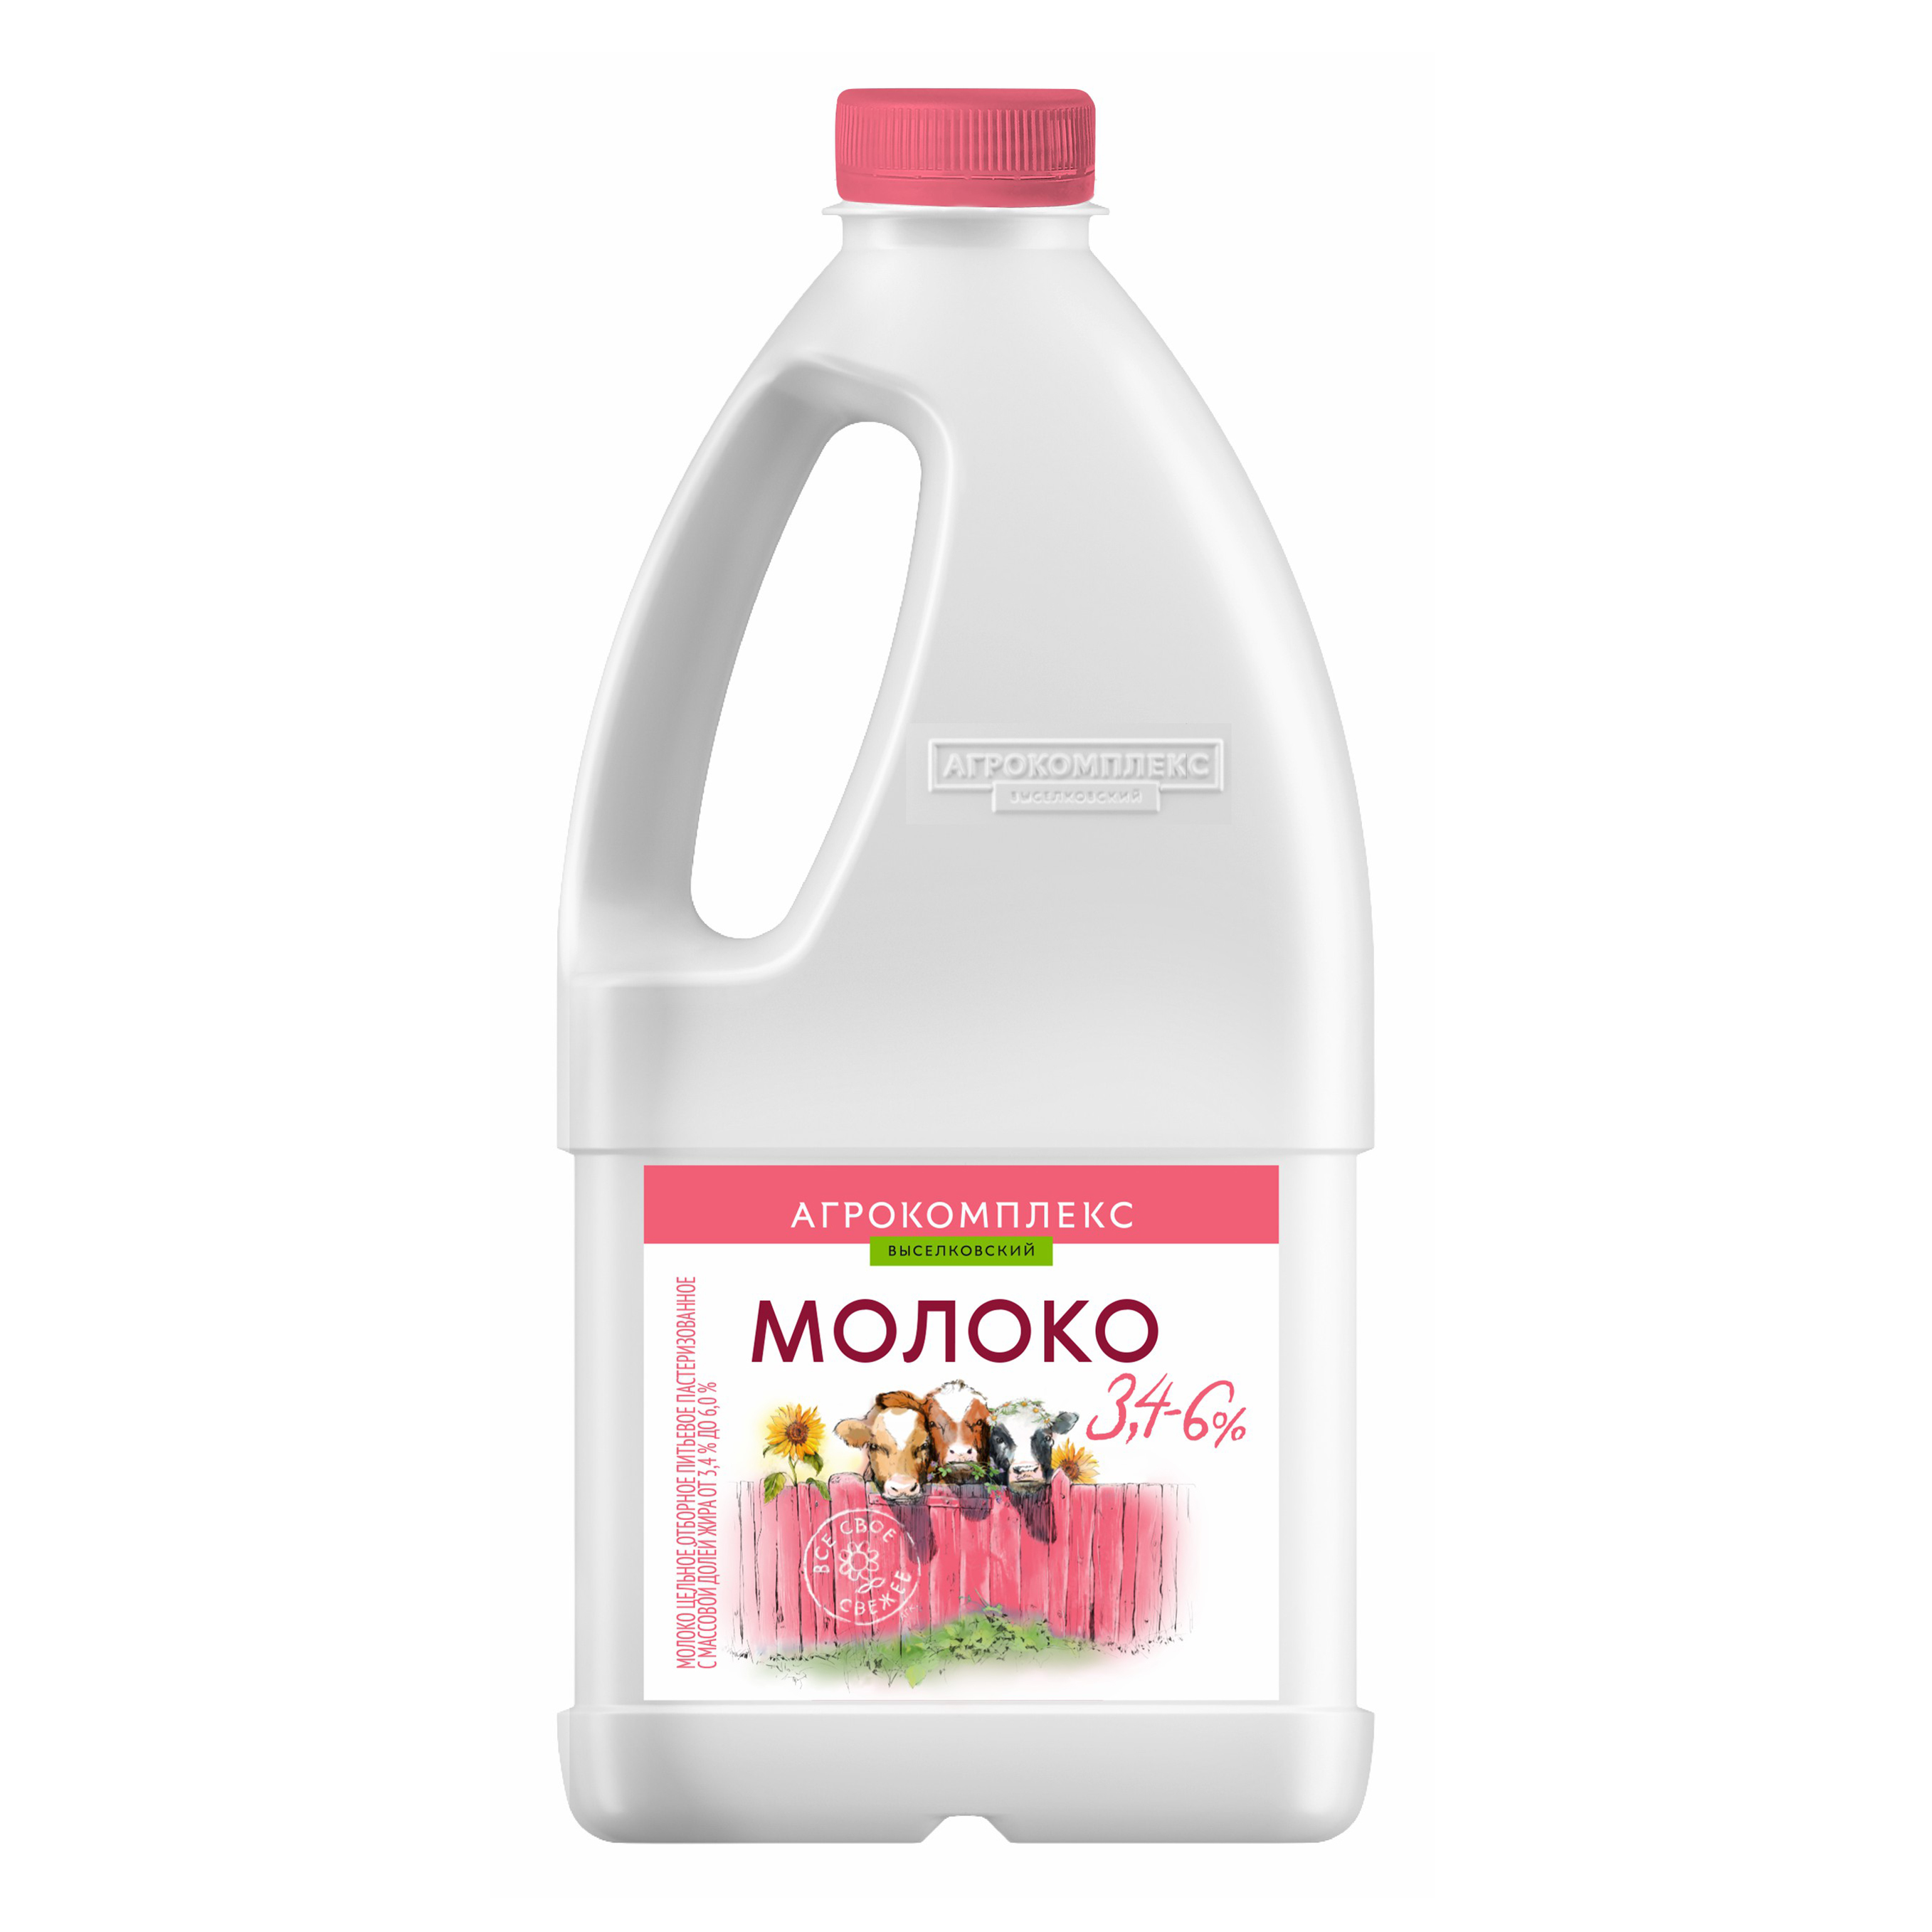 Молоко 3,4-6% пастеризованное 1,4 л Агрокомплекс Выселковский